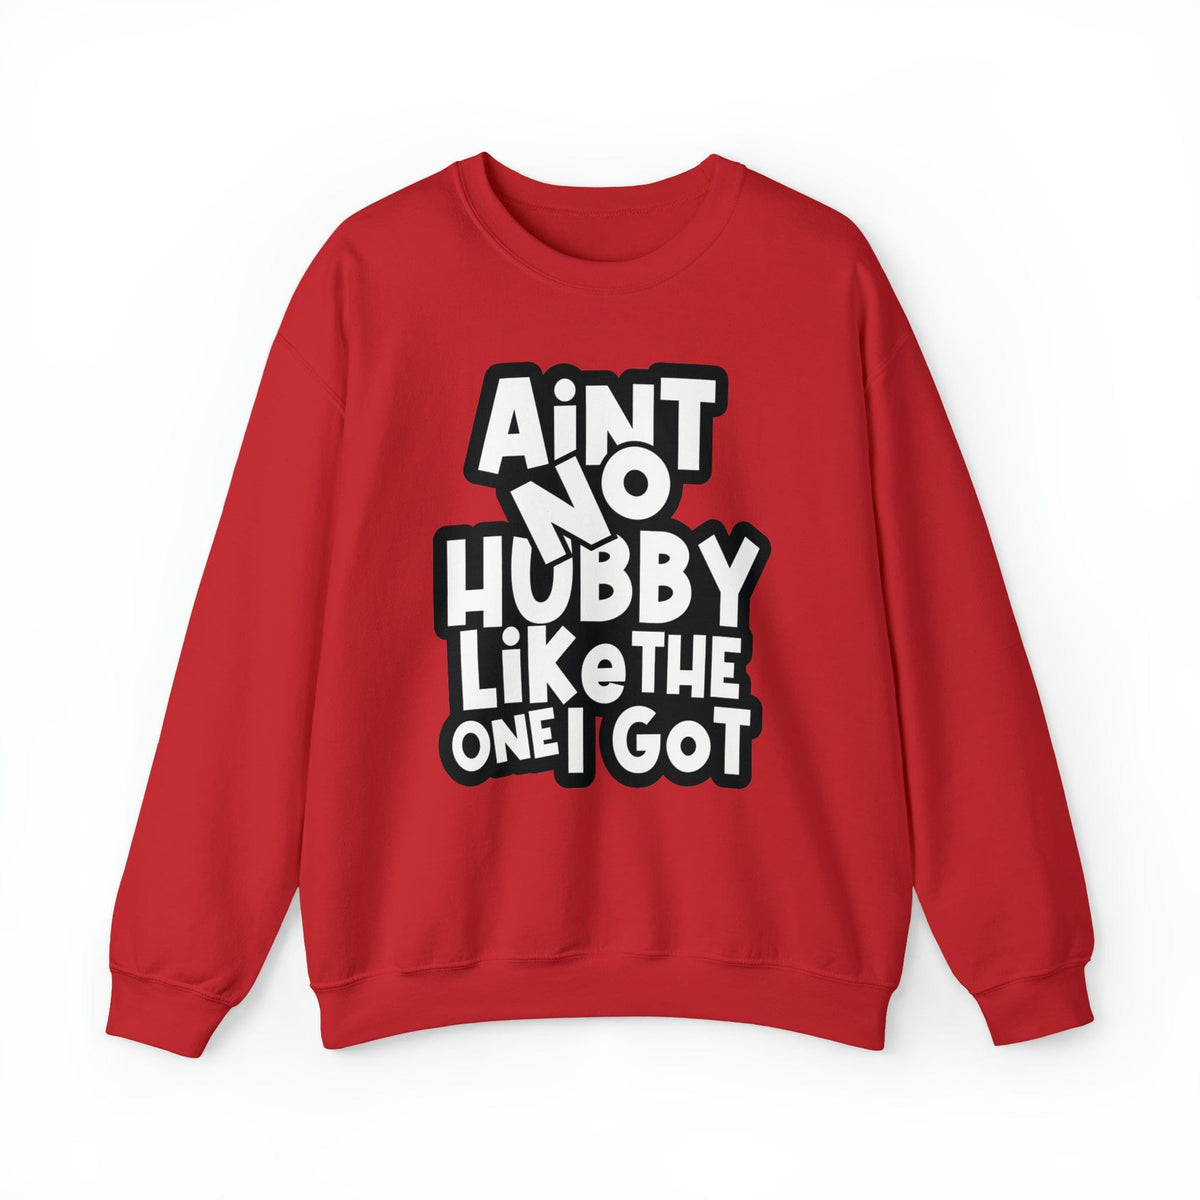 Aint no Hubby like the one I got Sweatshirt